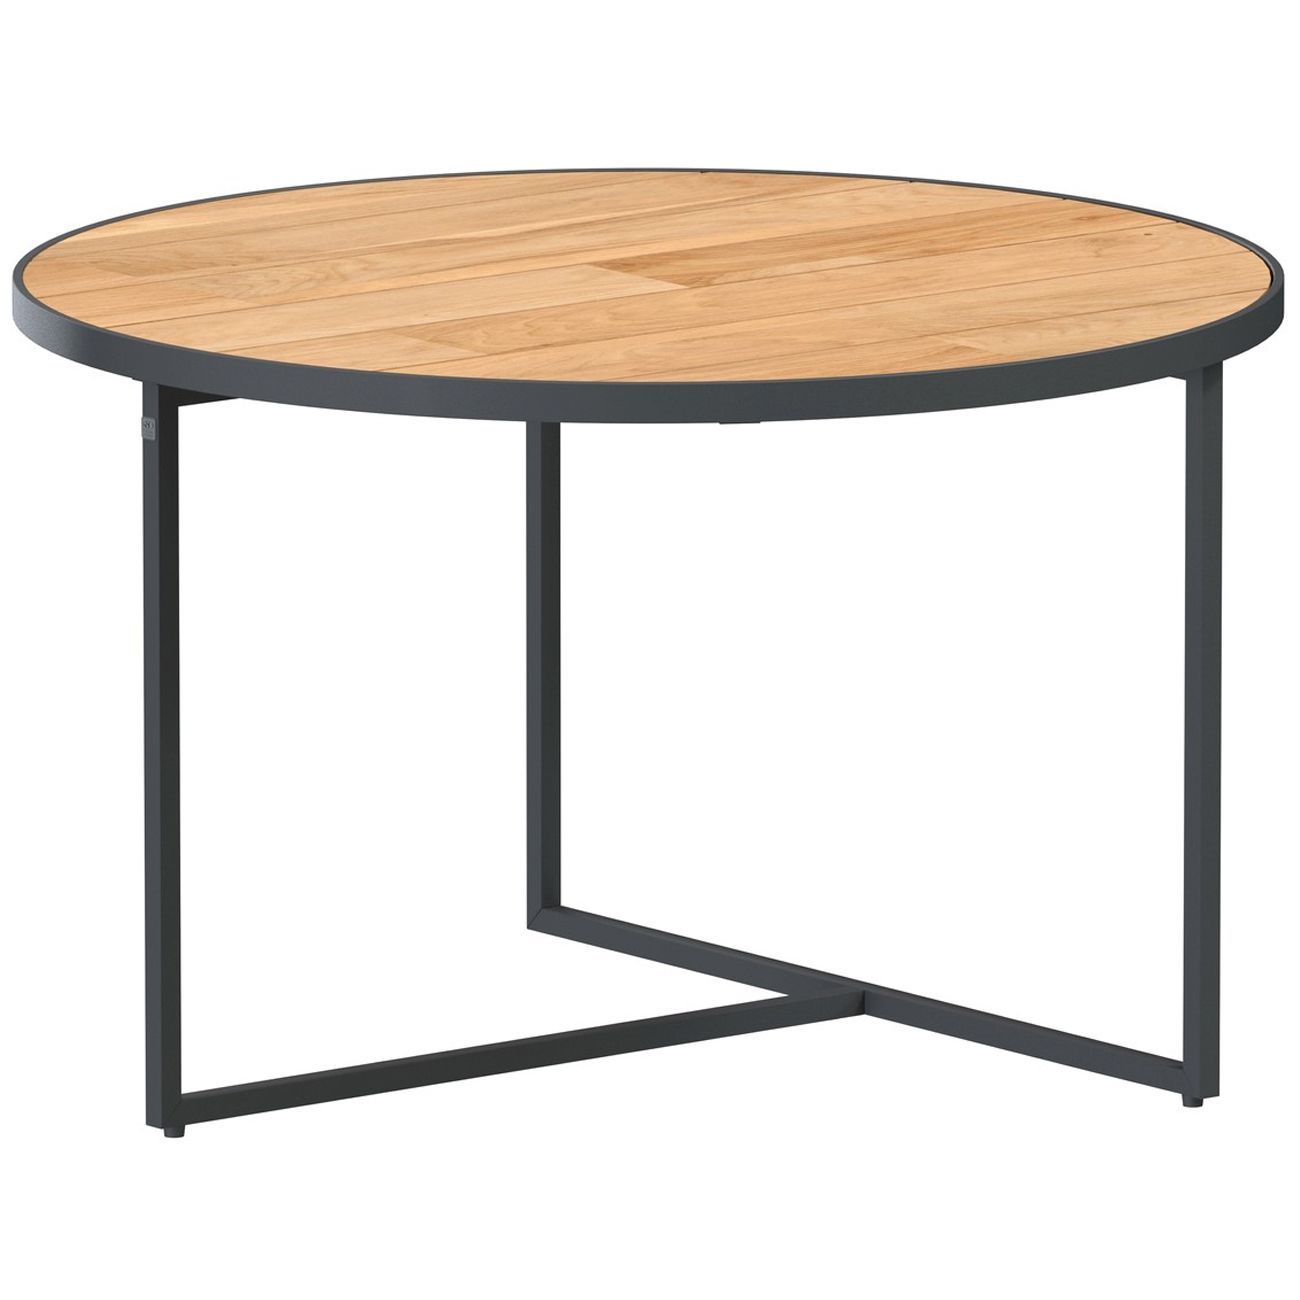 4Seasons Outdoor designové zahradní konferenční stoly Strada Coffee Table Round (průměr 73 cm) - DESIGNPROPAGANDA